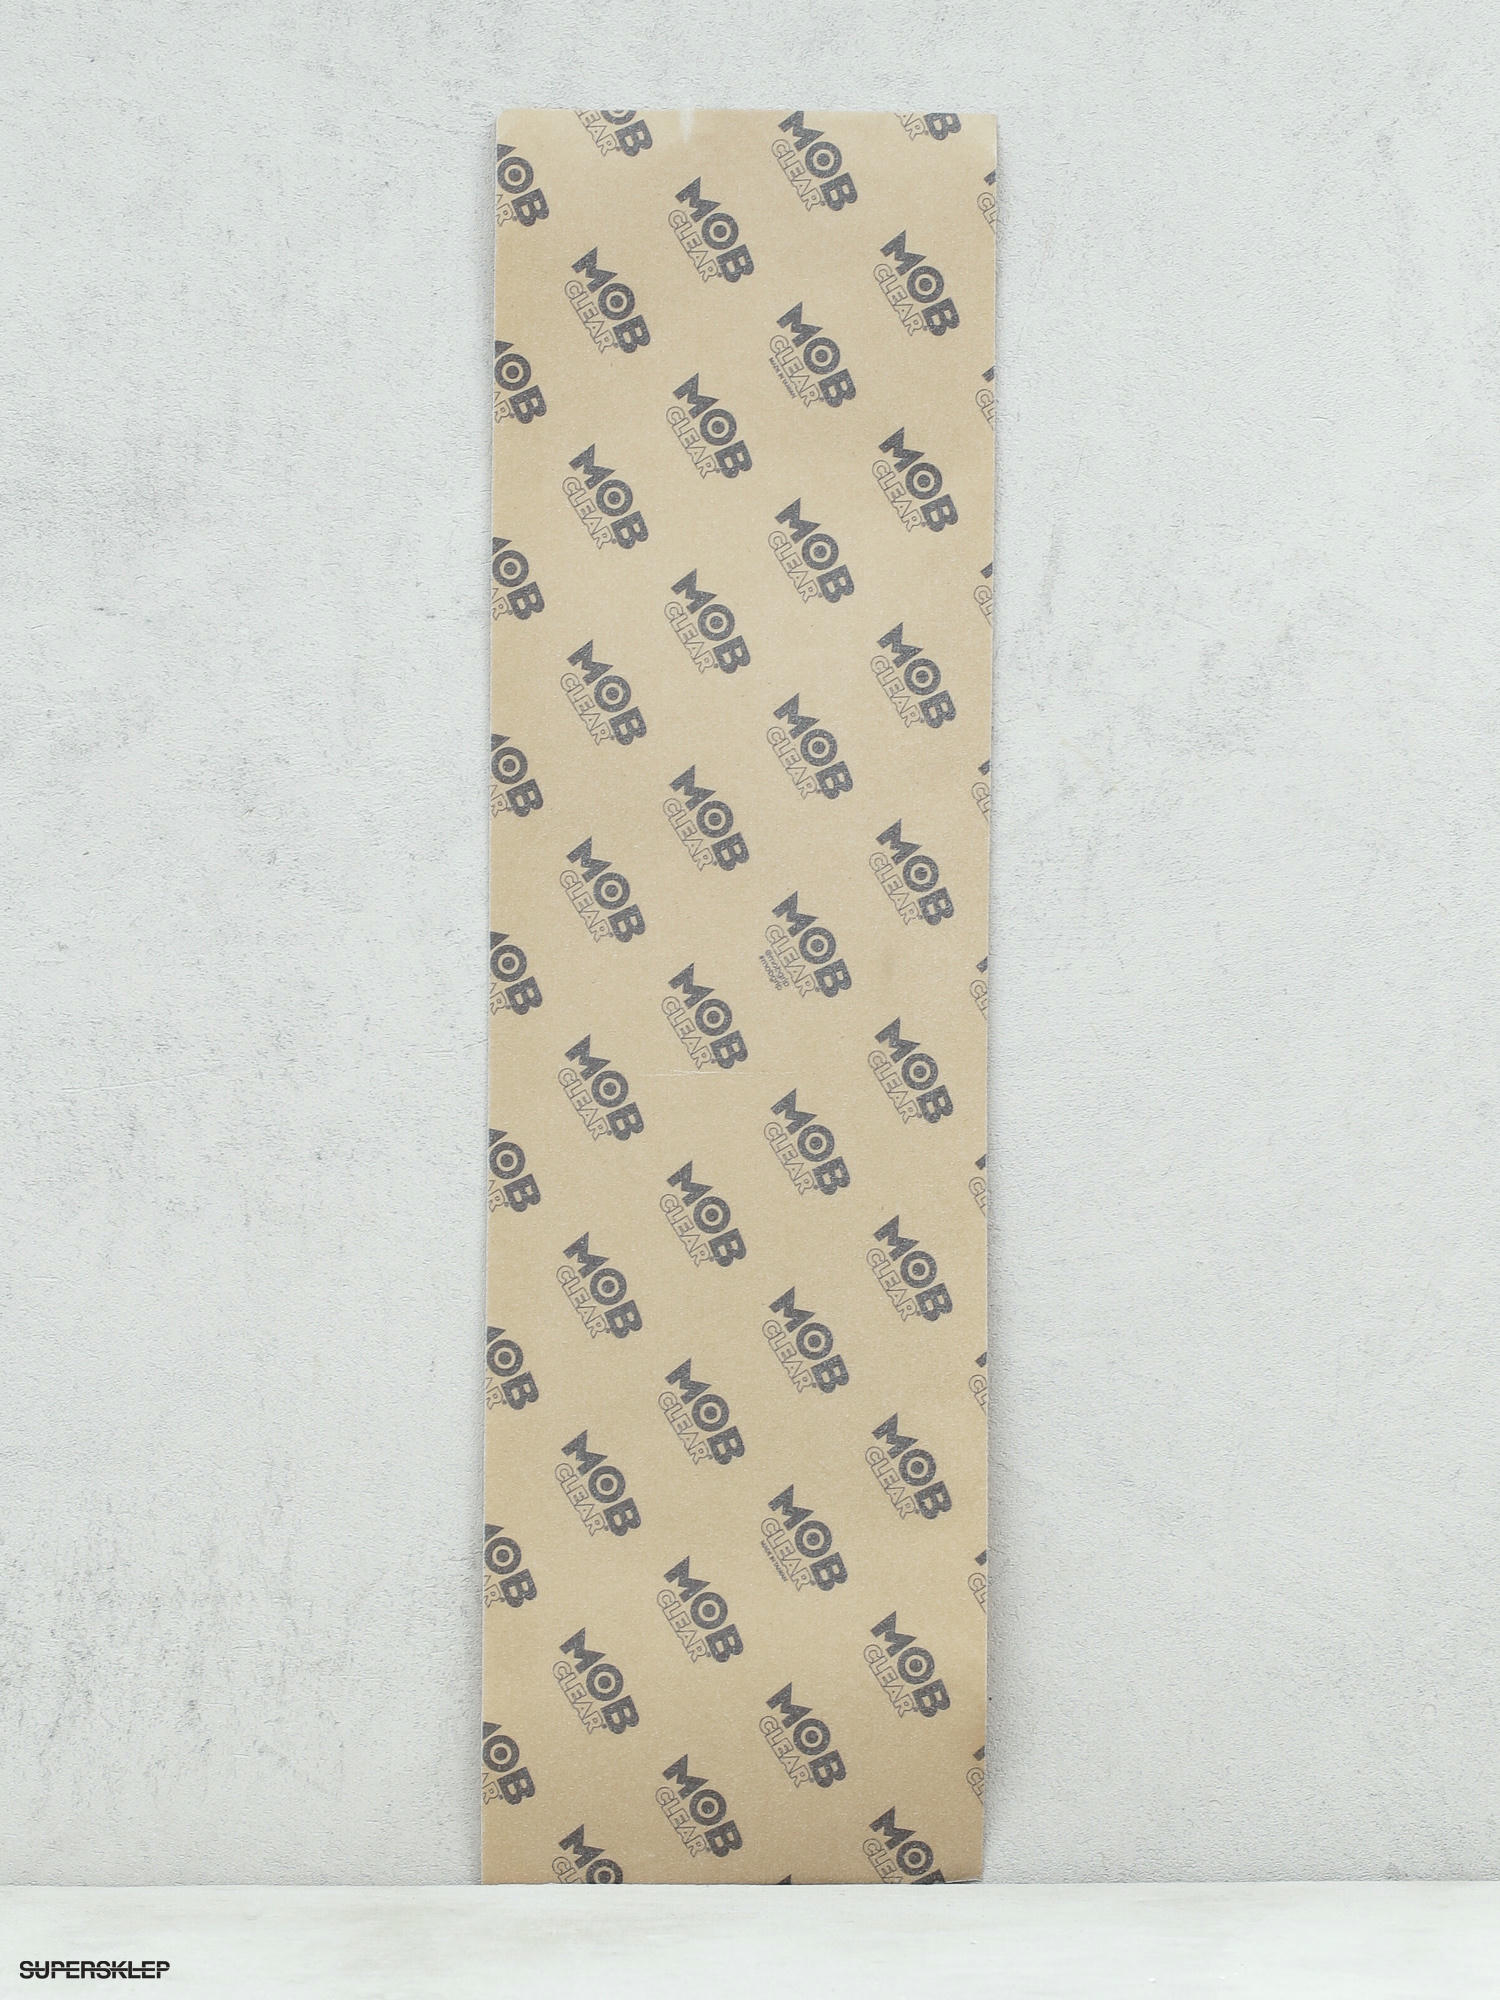 gaara skateboard grip tape